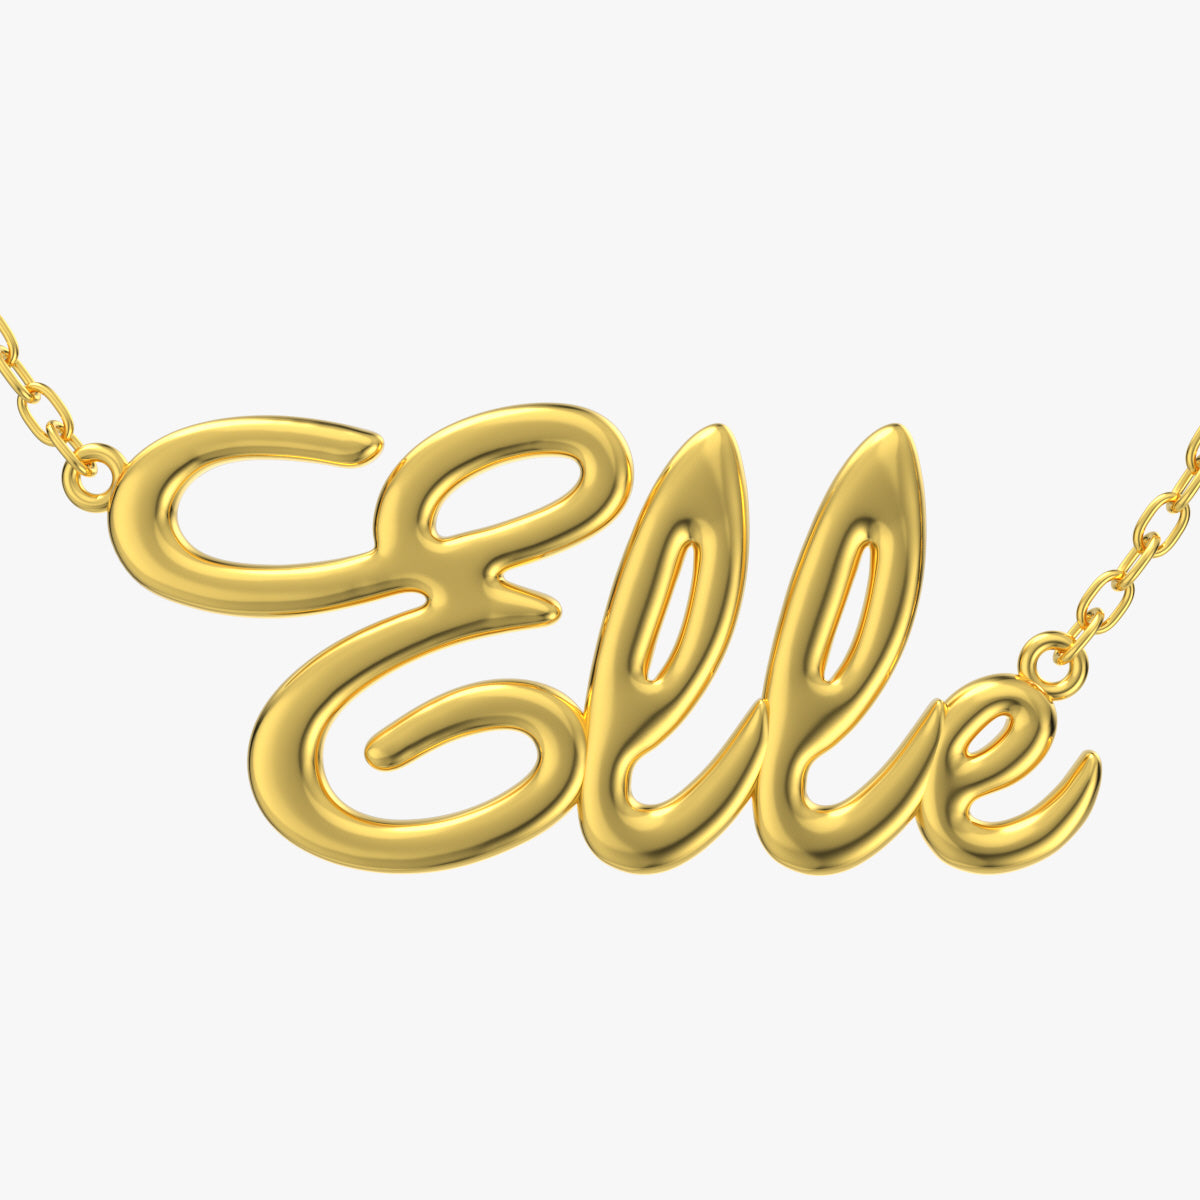 Elle Shiny Surface Version Jewelry Font Necklace Pendant Design-EDS-B 3D Print Model